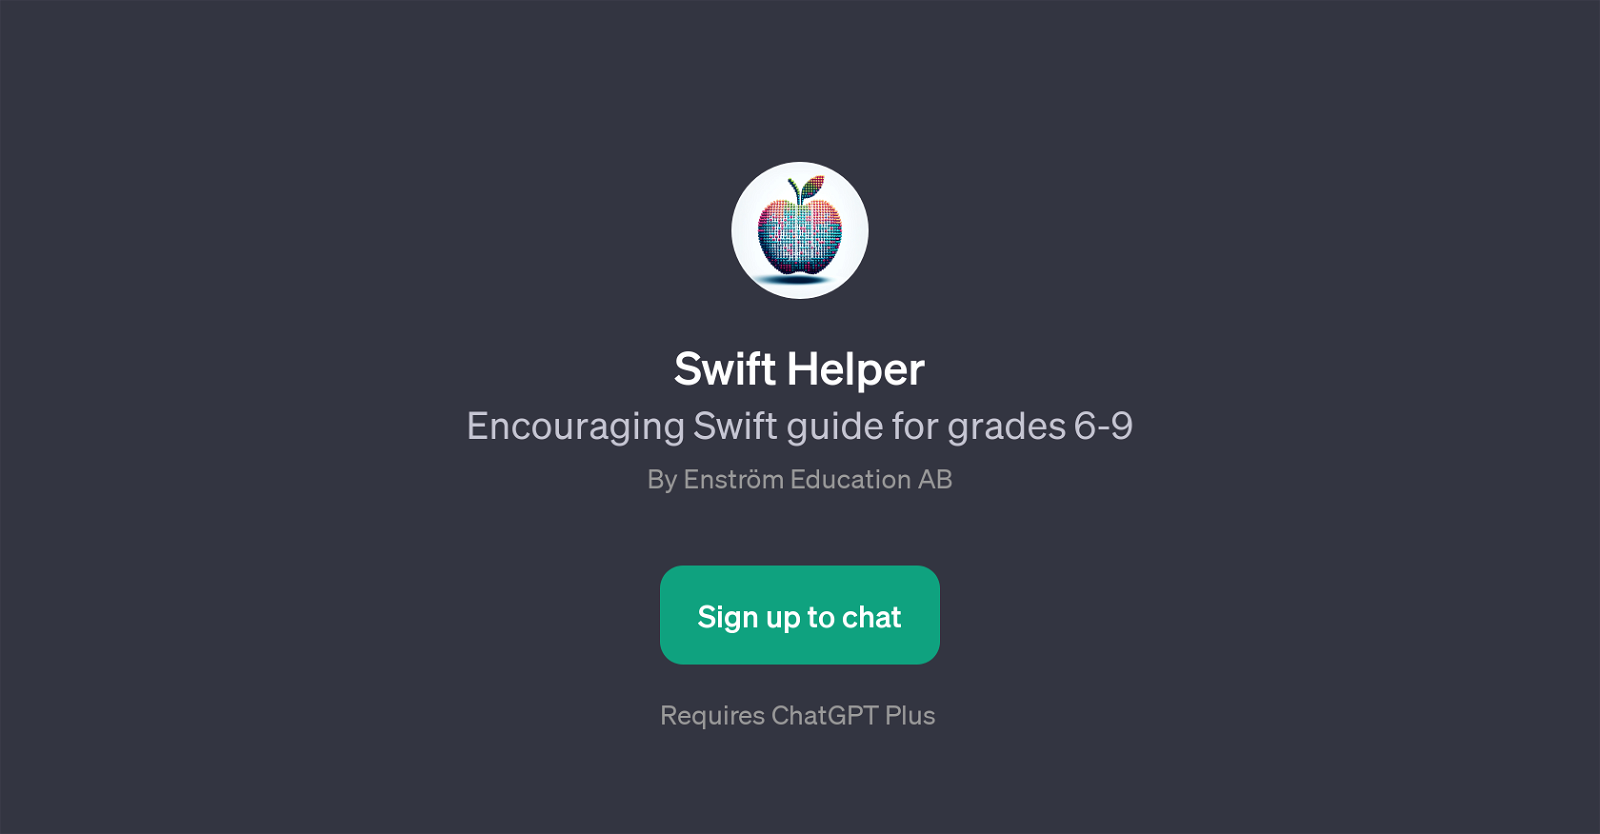 Swift Helper website